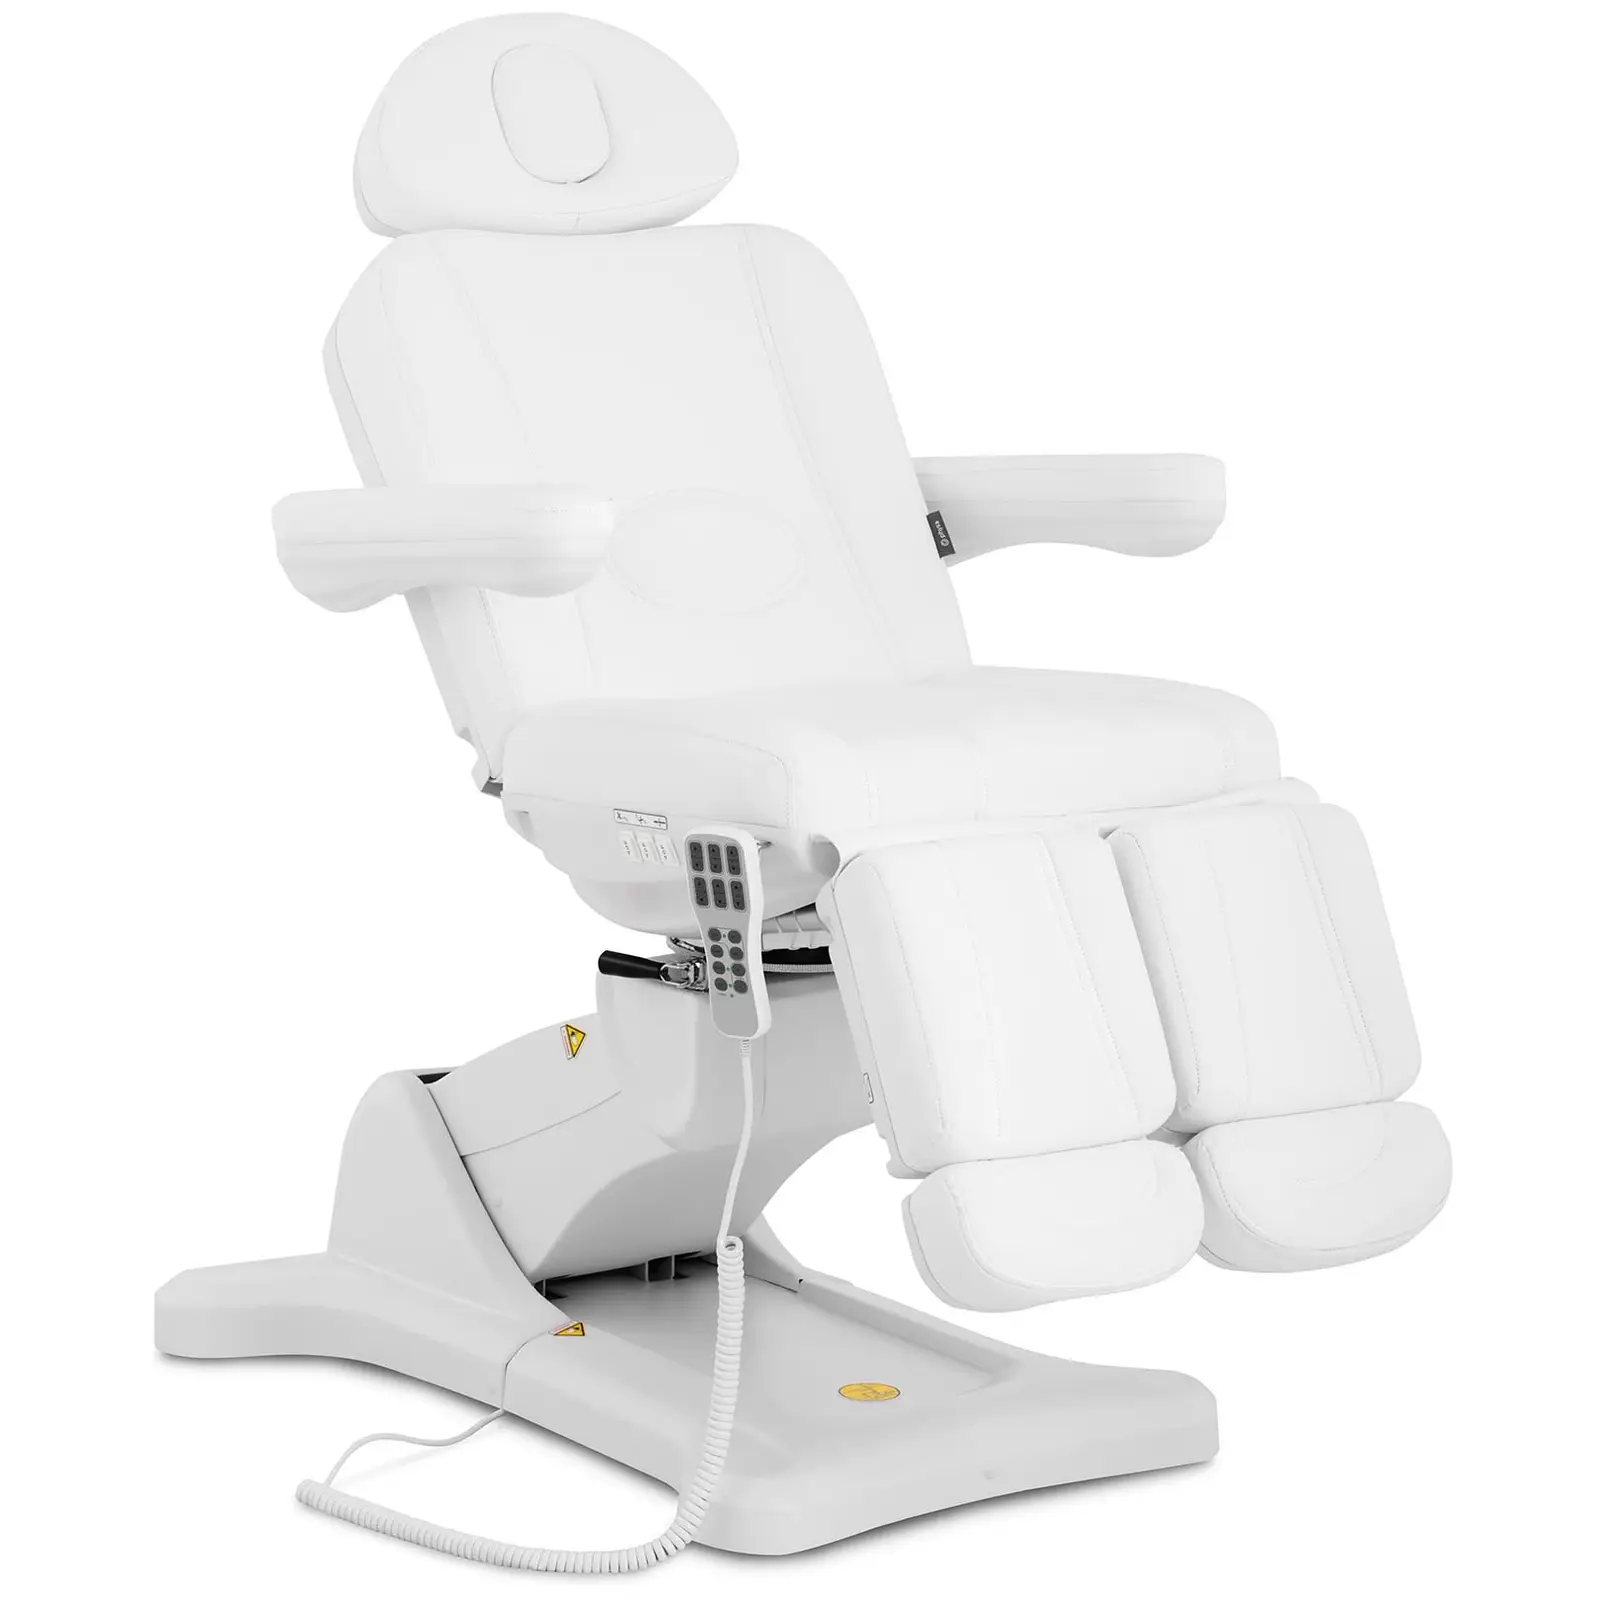 B-termék Pedikűr szék- 300 W - 175 kg - Fehér